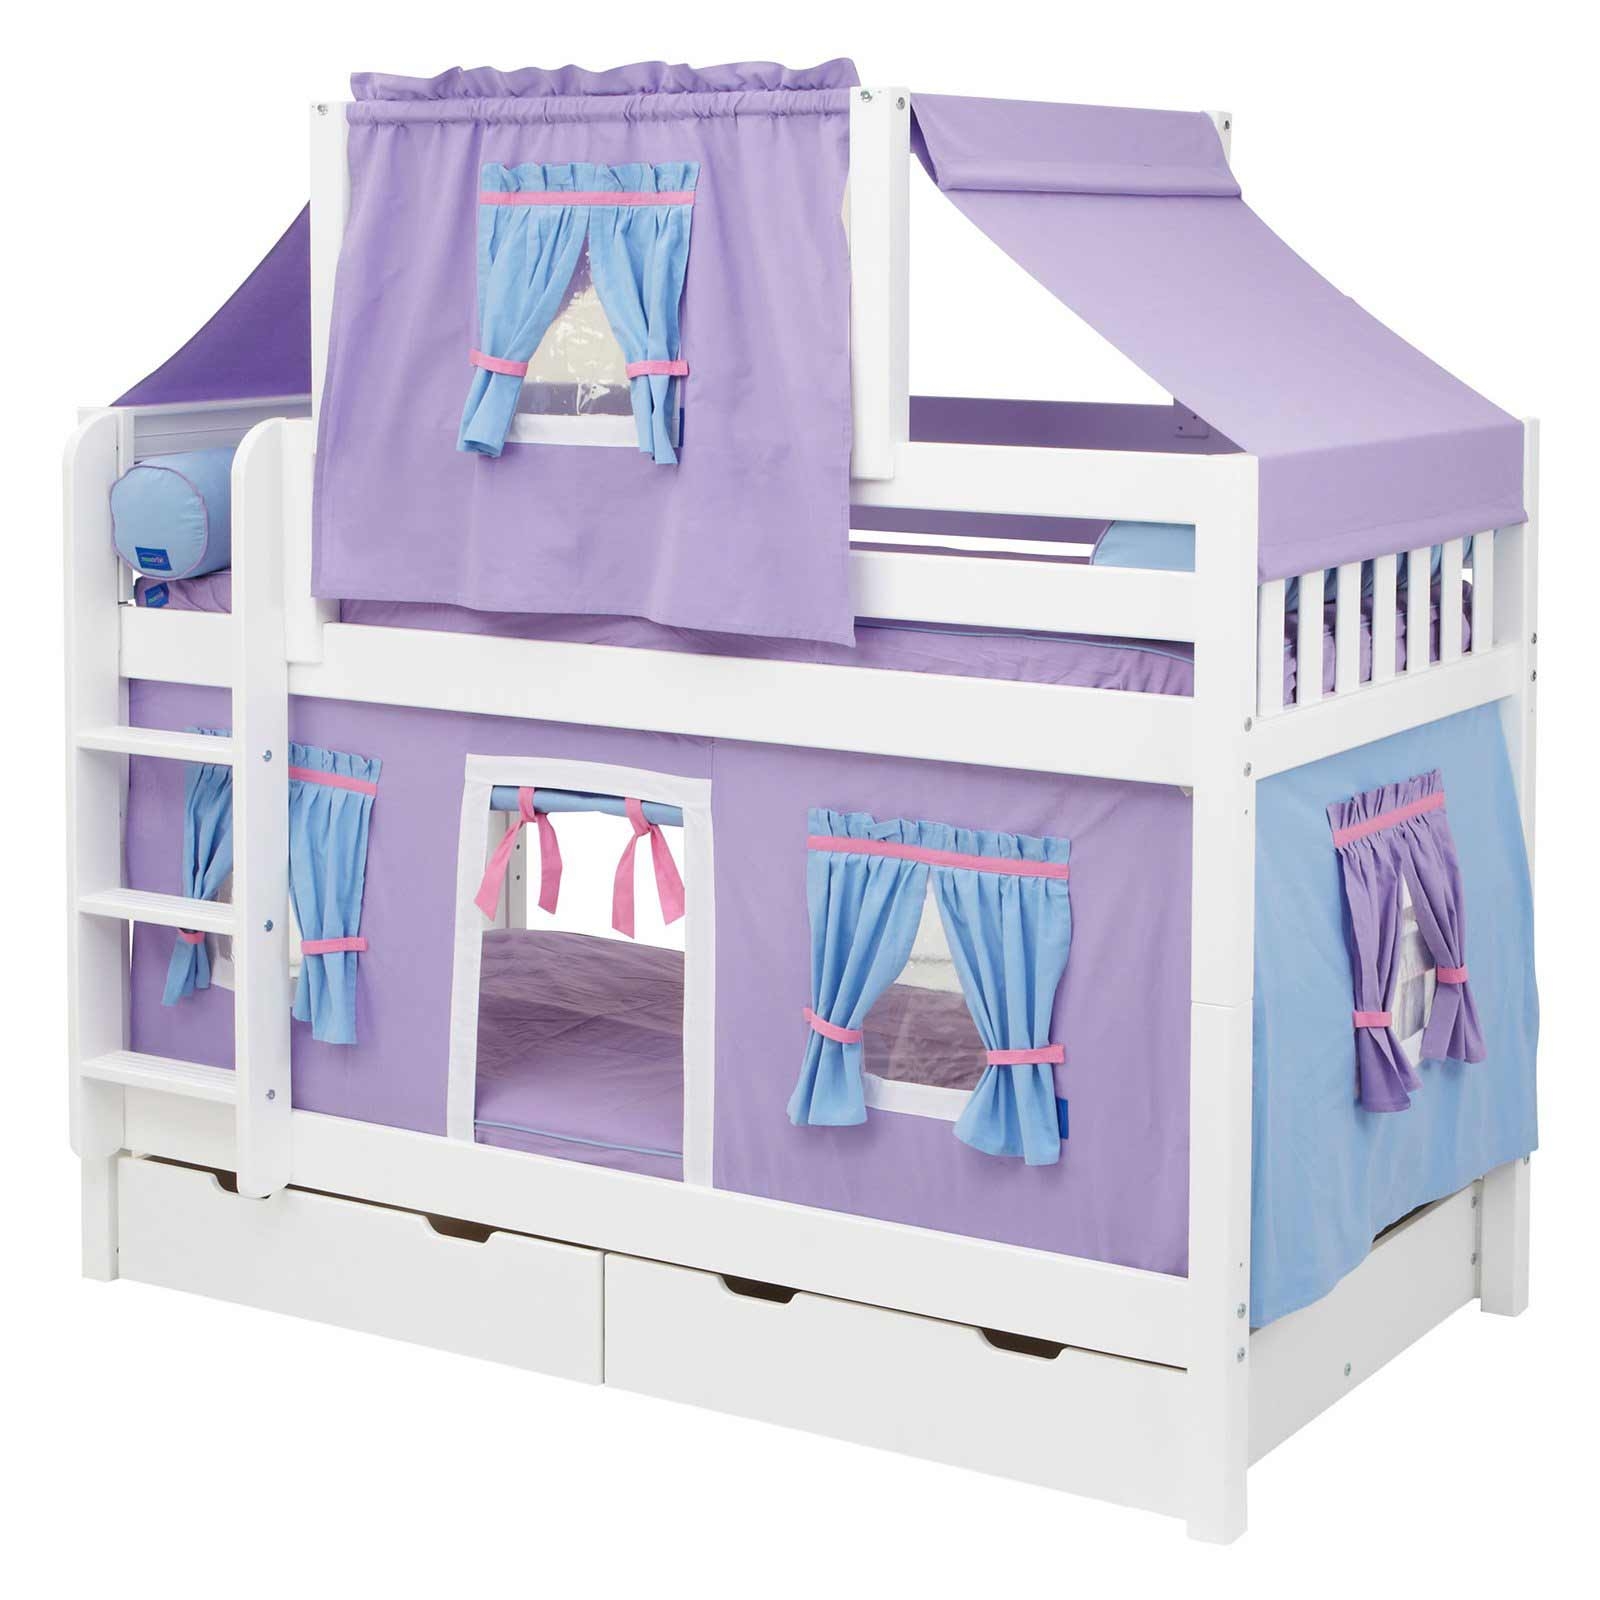 Girls princess bunk beds